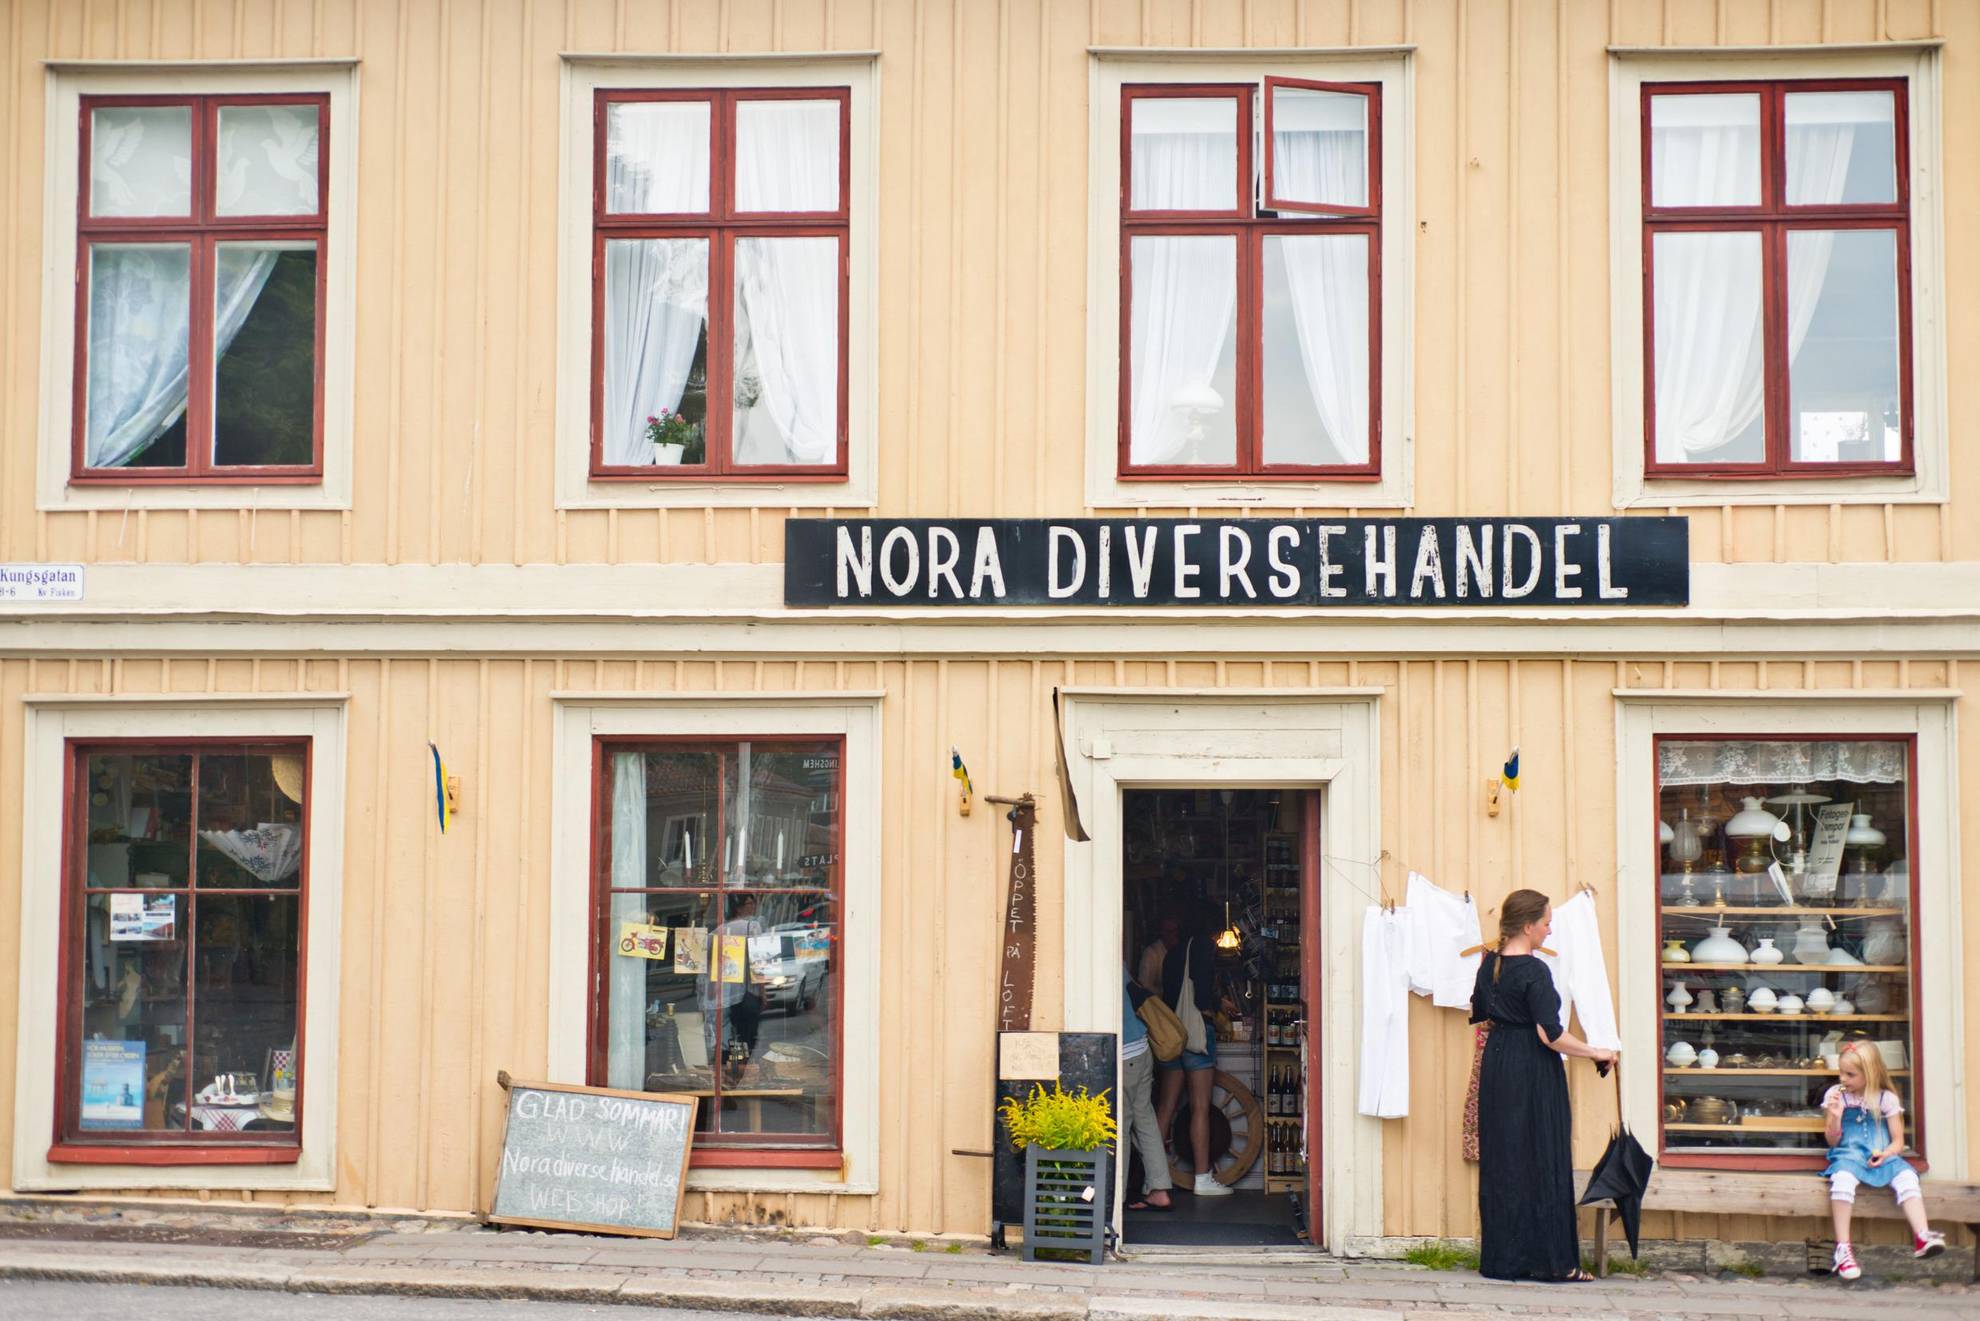 Une petite boutique abritée dans une maison en bois jaune dans une rue de la vieille ville. Une pancarte au-dessus de la boutique indique "Nora Diversehandel". Une femme se tient debout et une petite fille est assise sur un banc devant la maison.